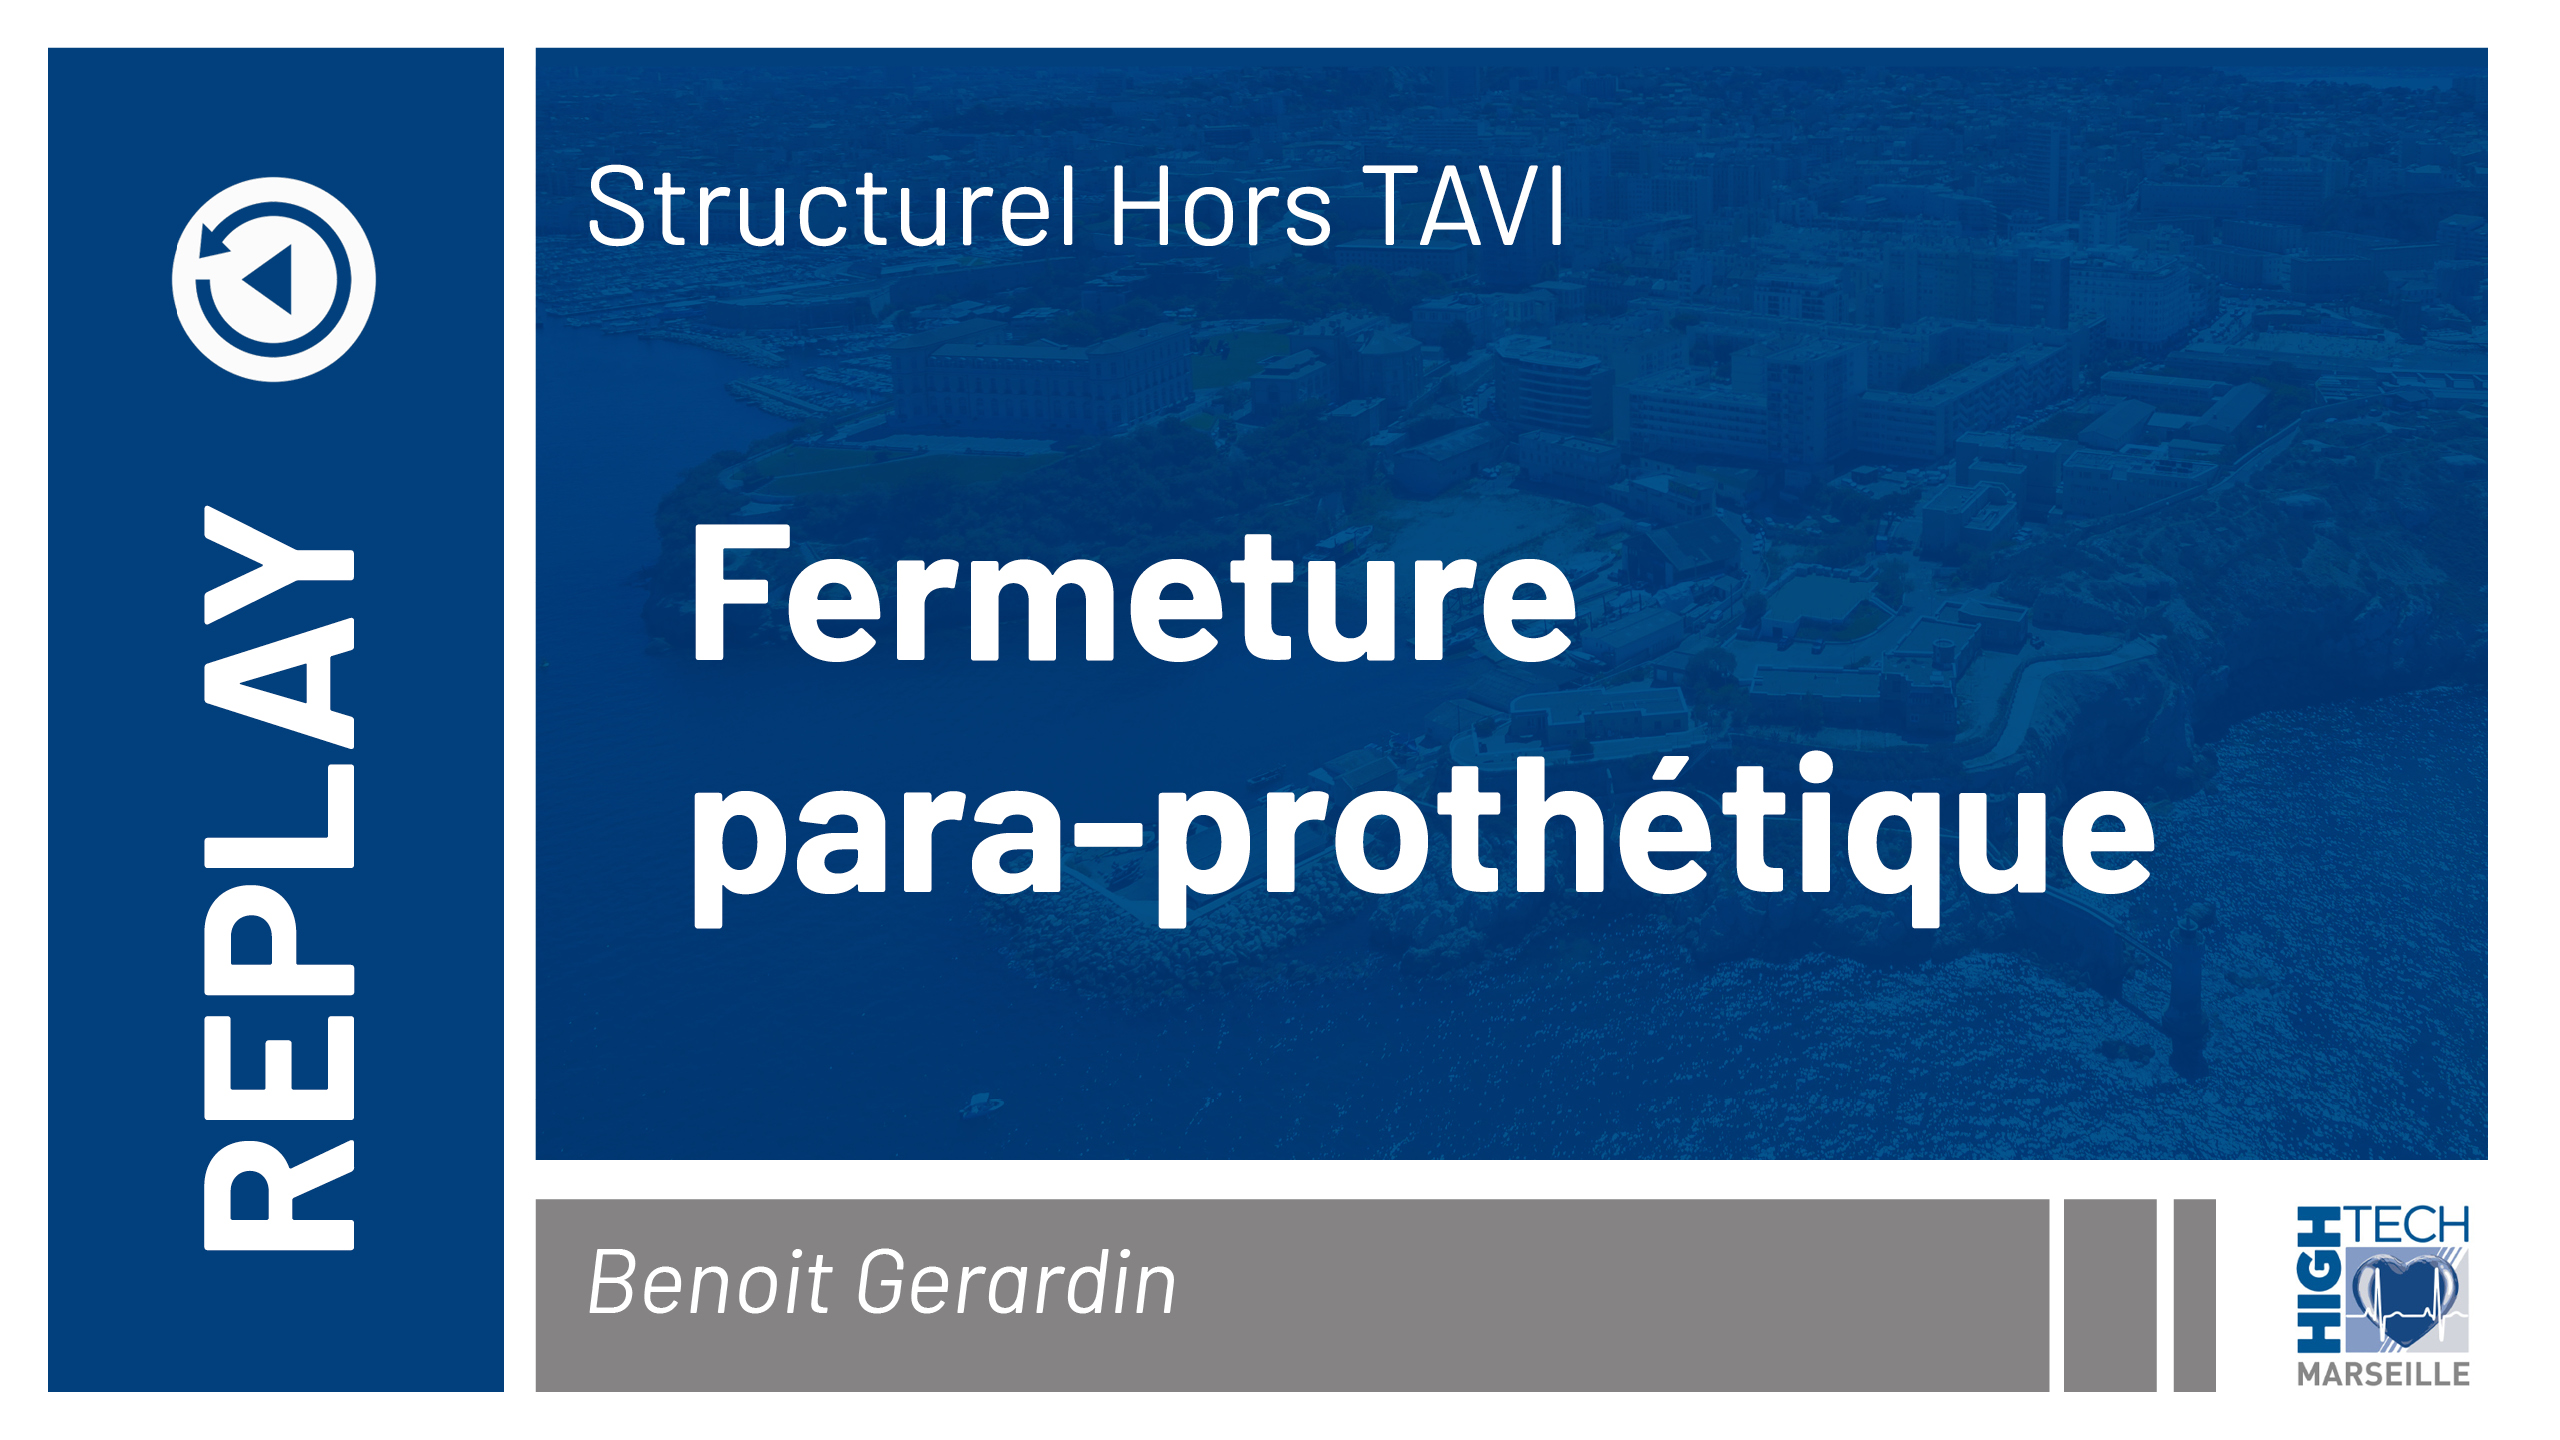 Fermeture para-prothétique – Benoit Gerardin